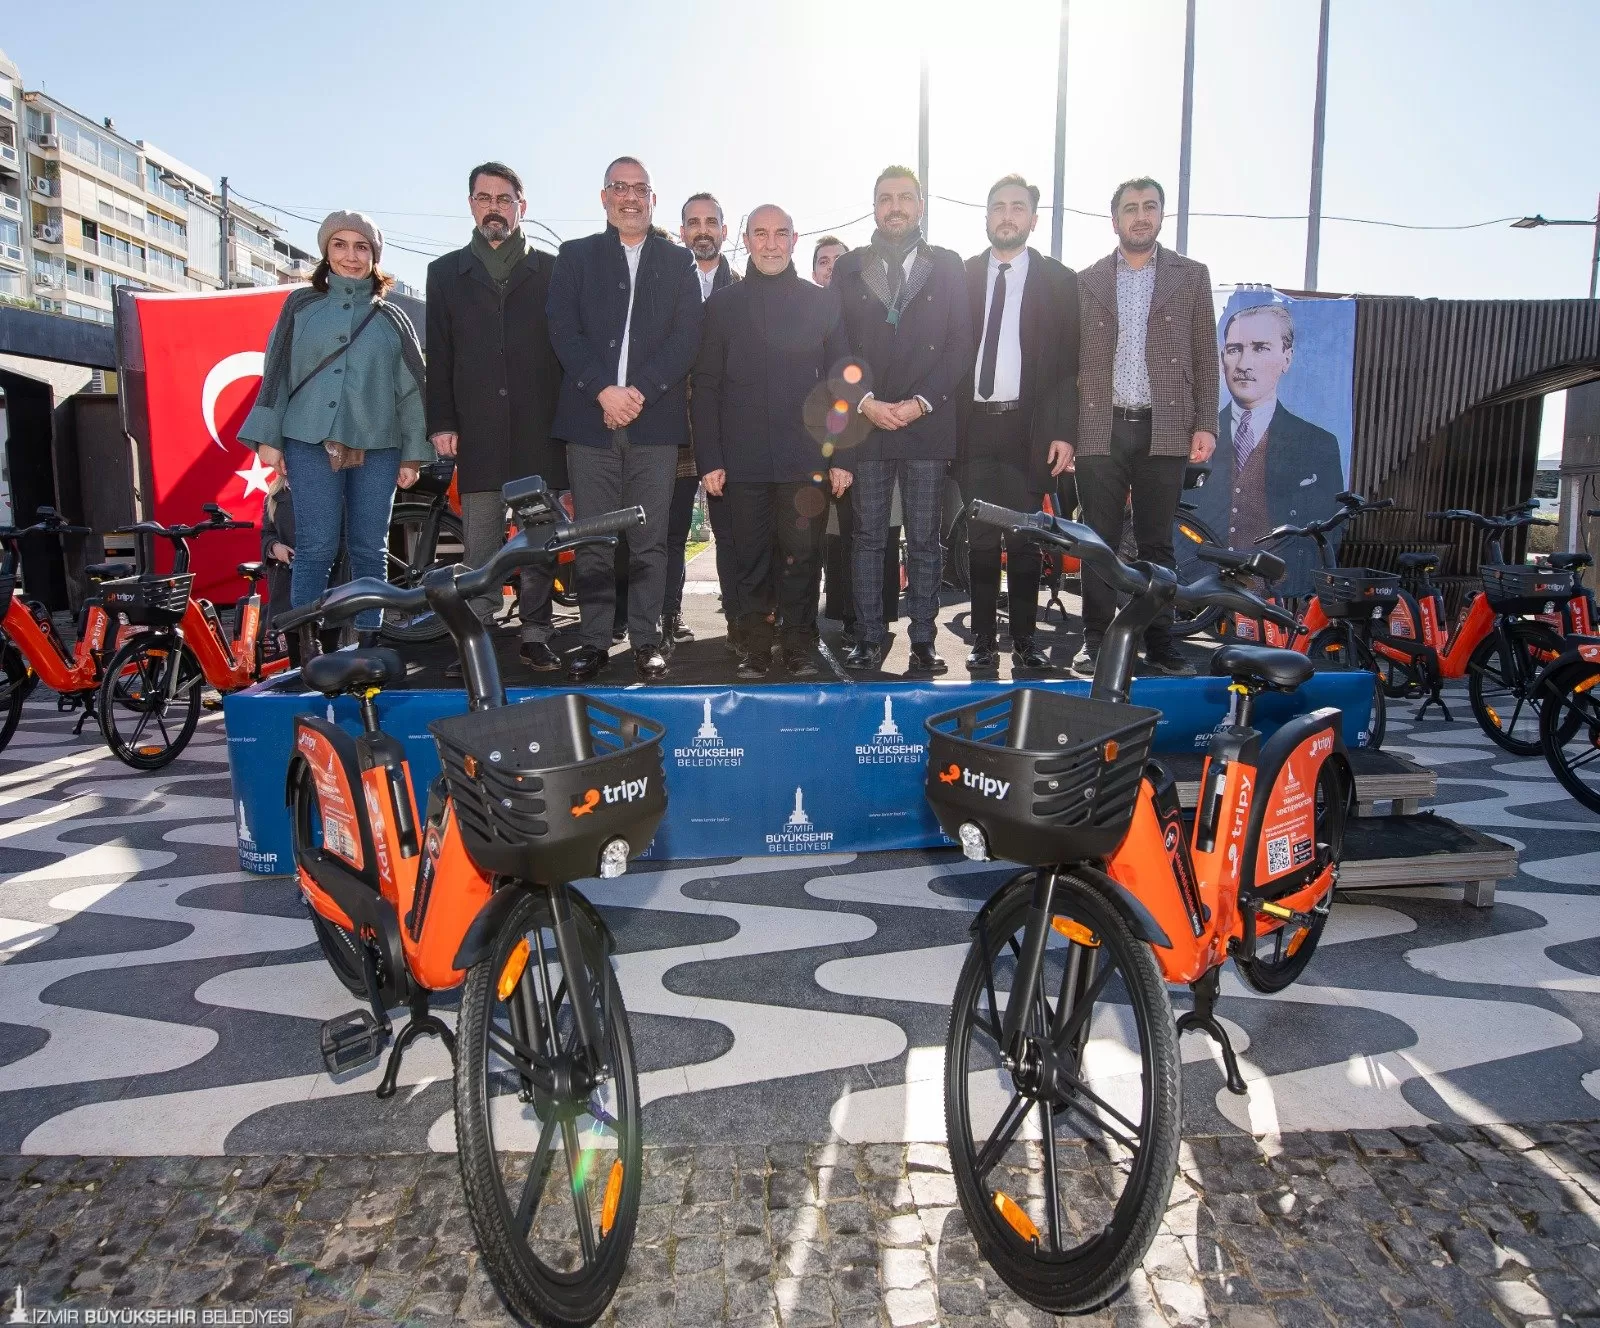 İzmir Büyükşehir Belediyesi, kent içi ulaşımı daha sürdürülebilir ve çevreci hale getirmek amacıyla Elektrik Destekli Akıllı Bisiklet Paylaşım Sistemi'ni hayata geçirdi.